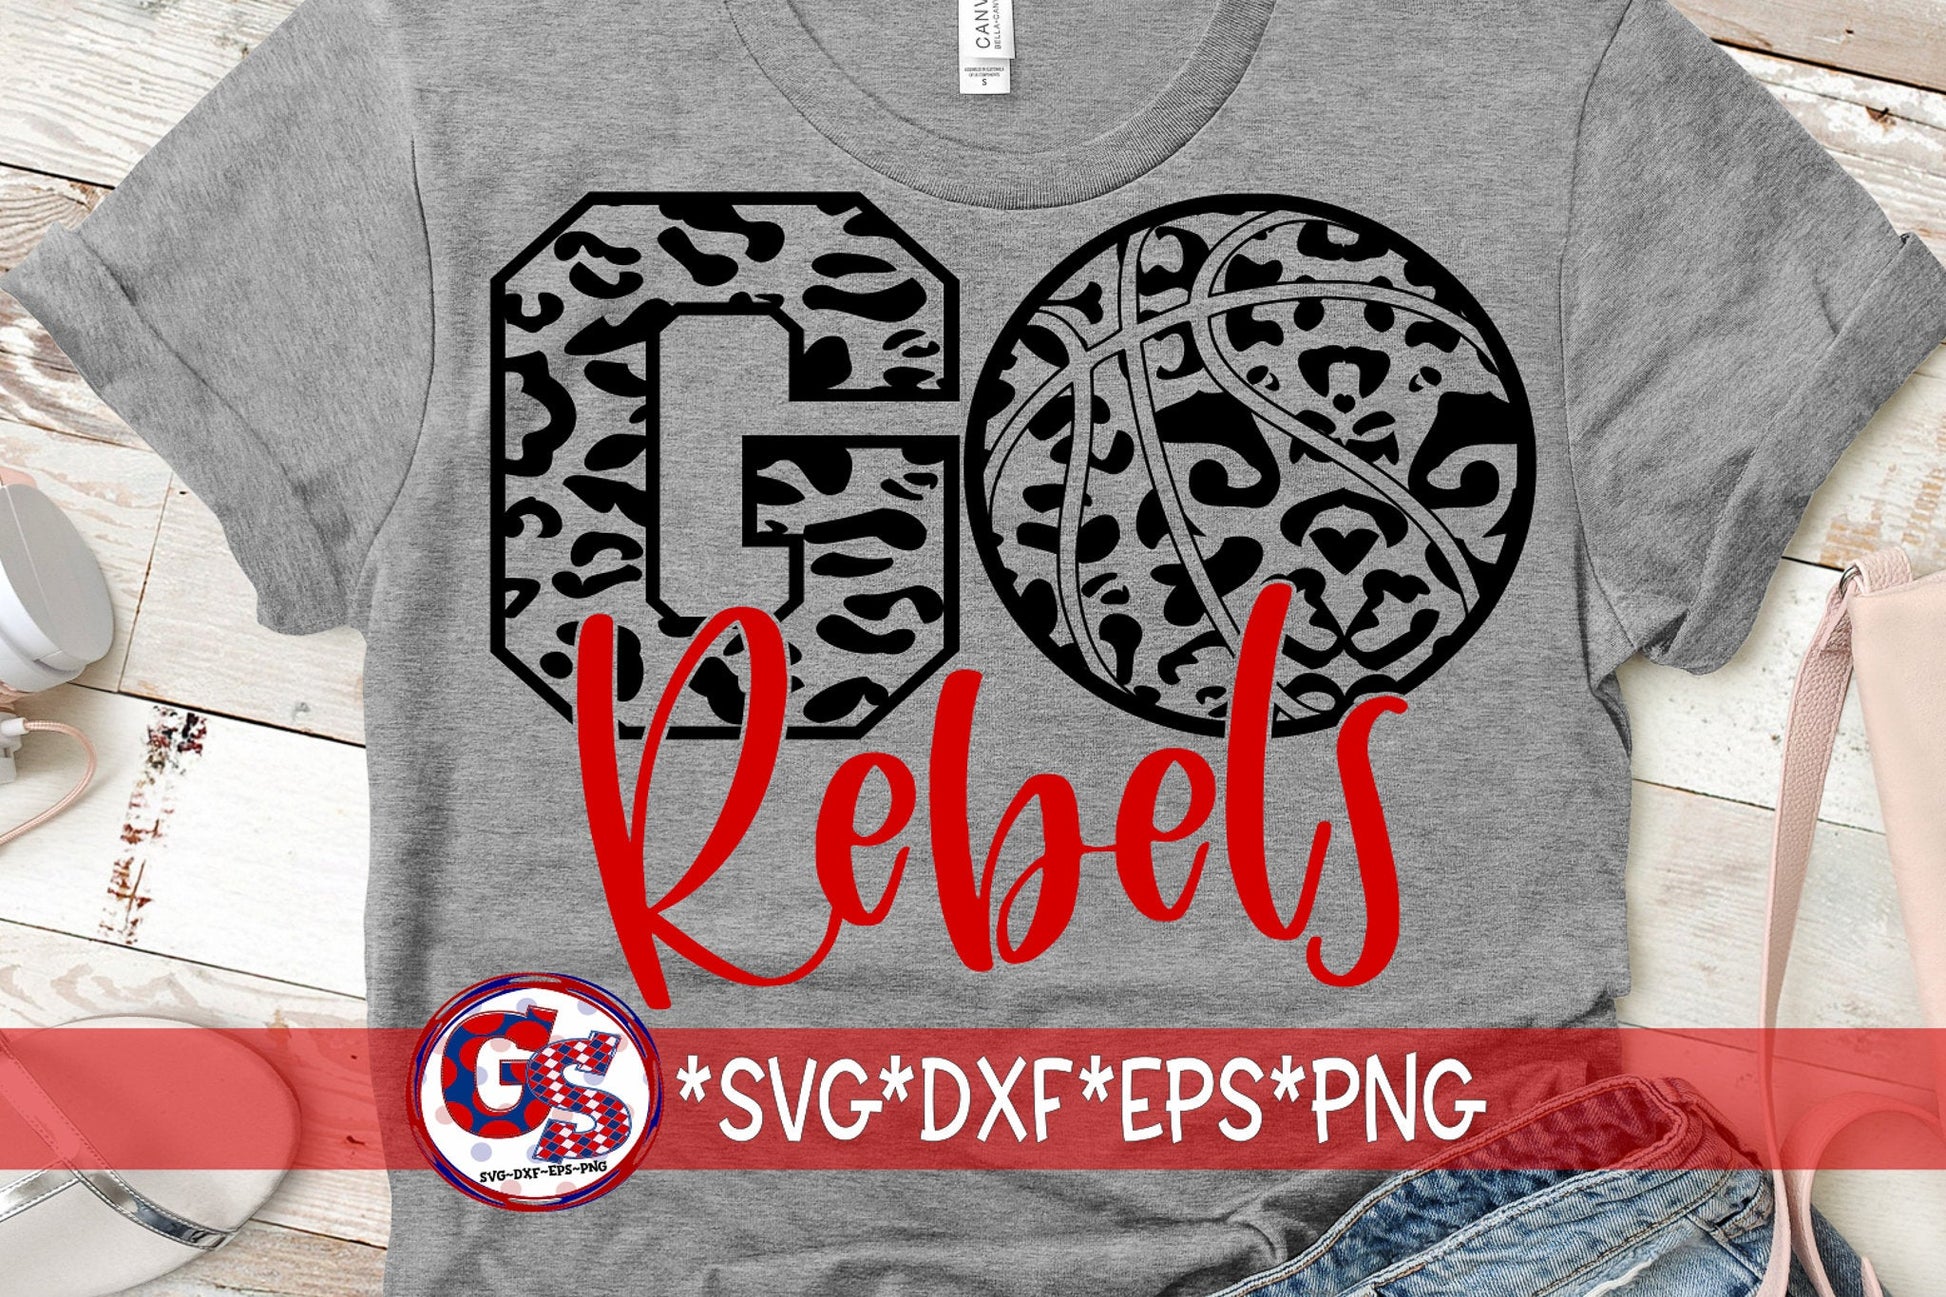 Rebels SvG | Go Rebels Basketball svg dxf eps png. Go Rebels Basketball Leopard SvG | Rebels DxF | Rebels SvG | Instant Download Cut File